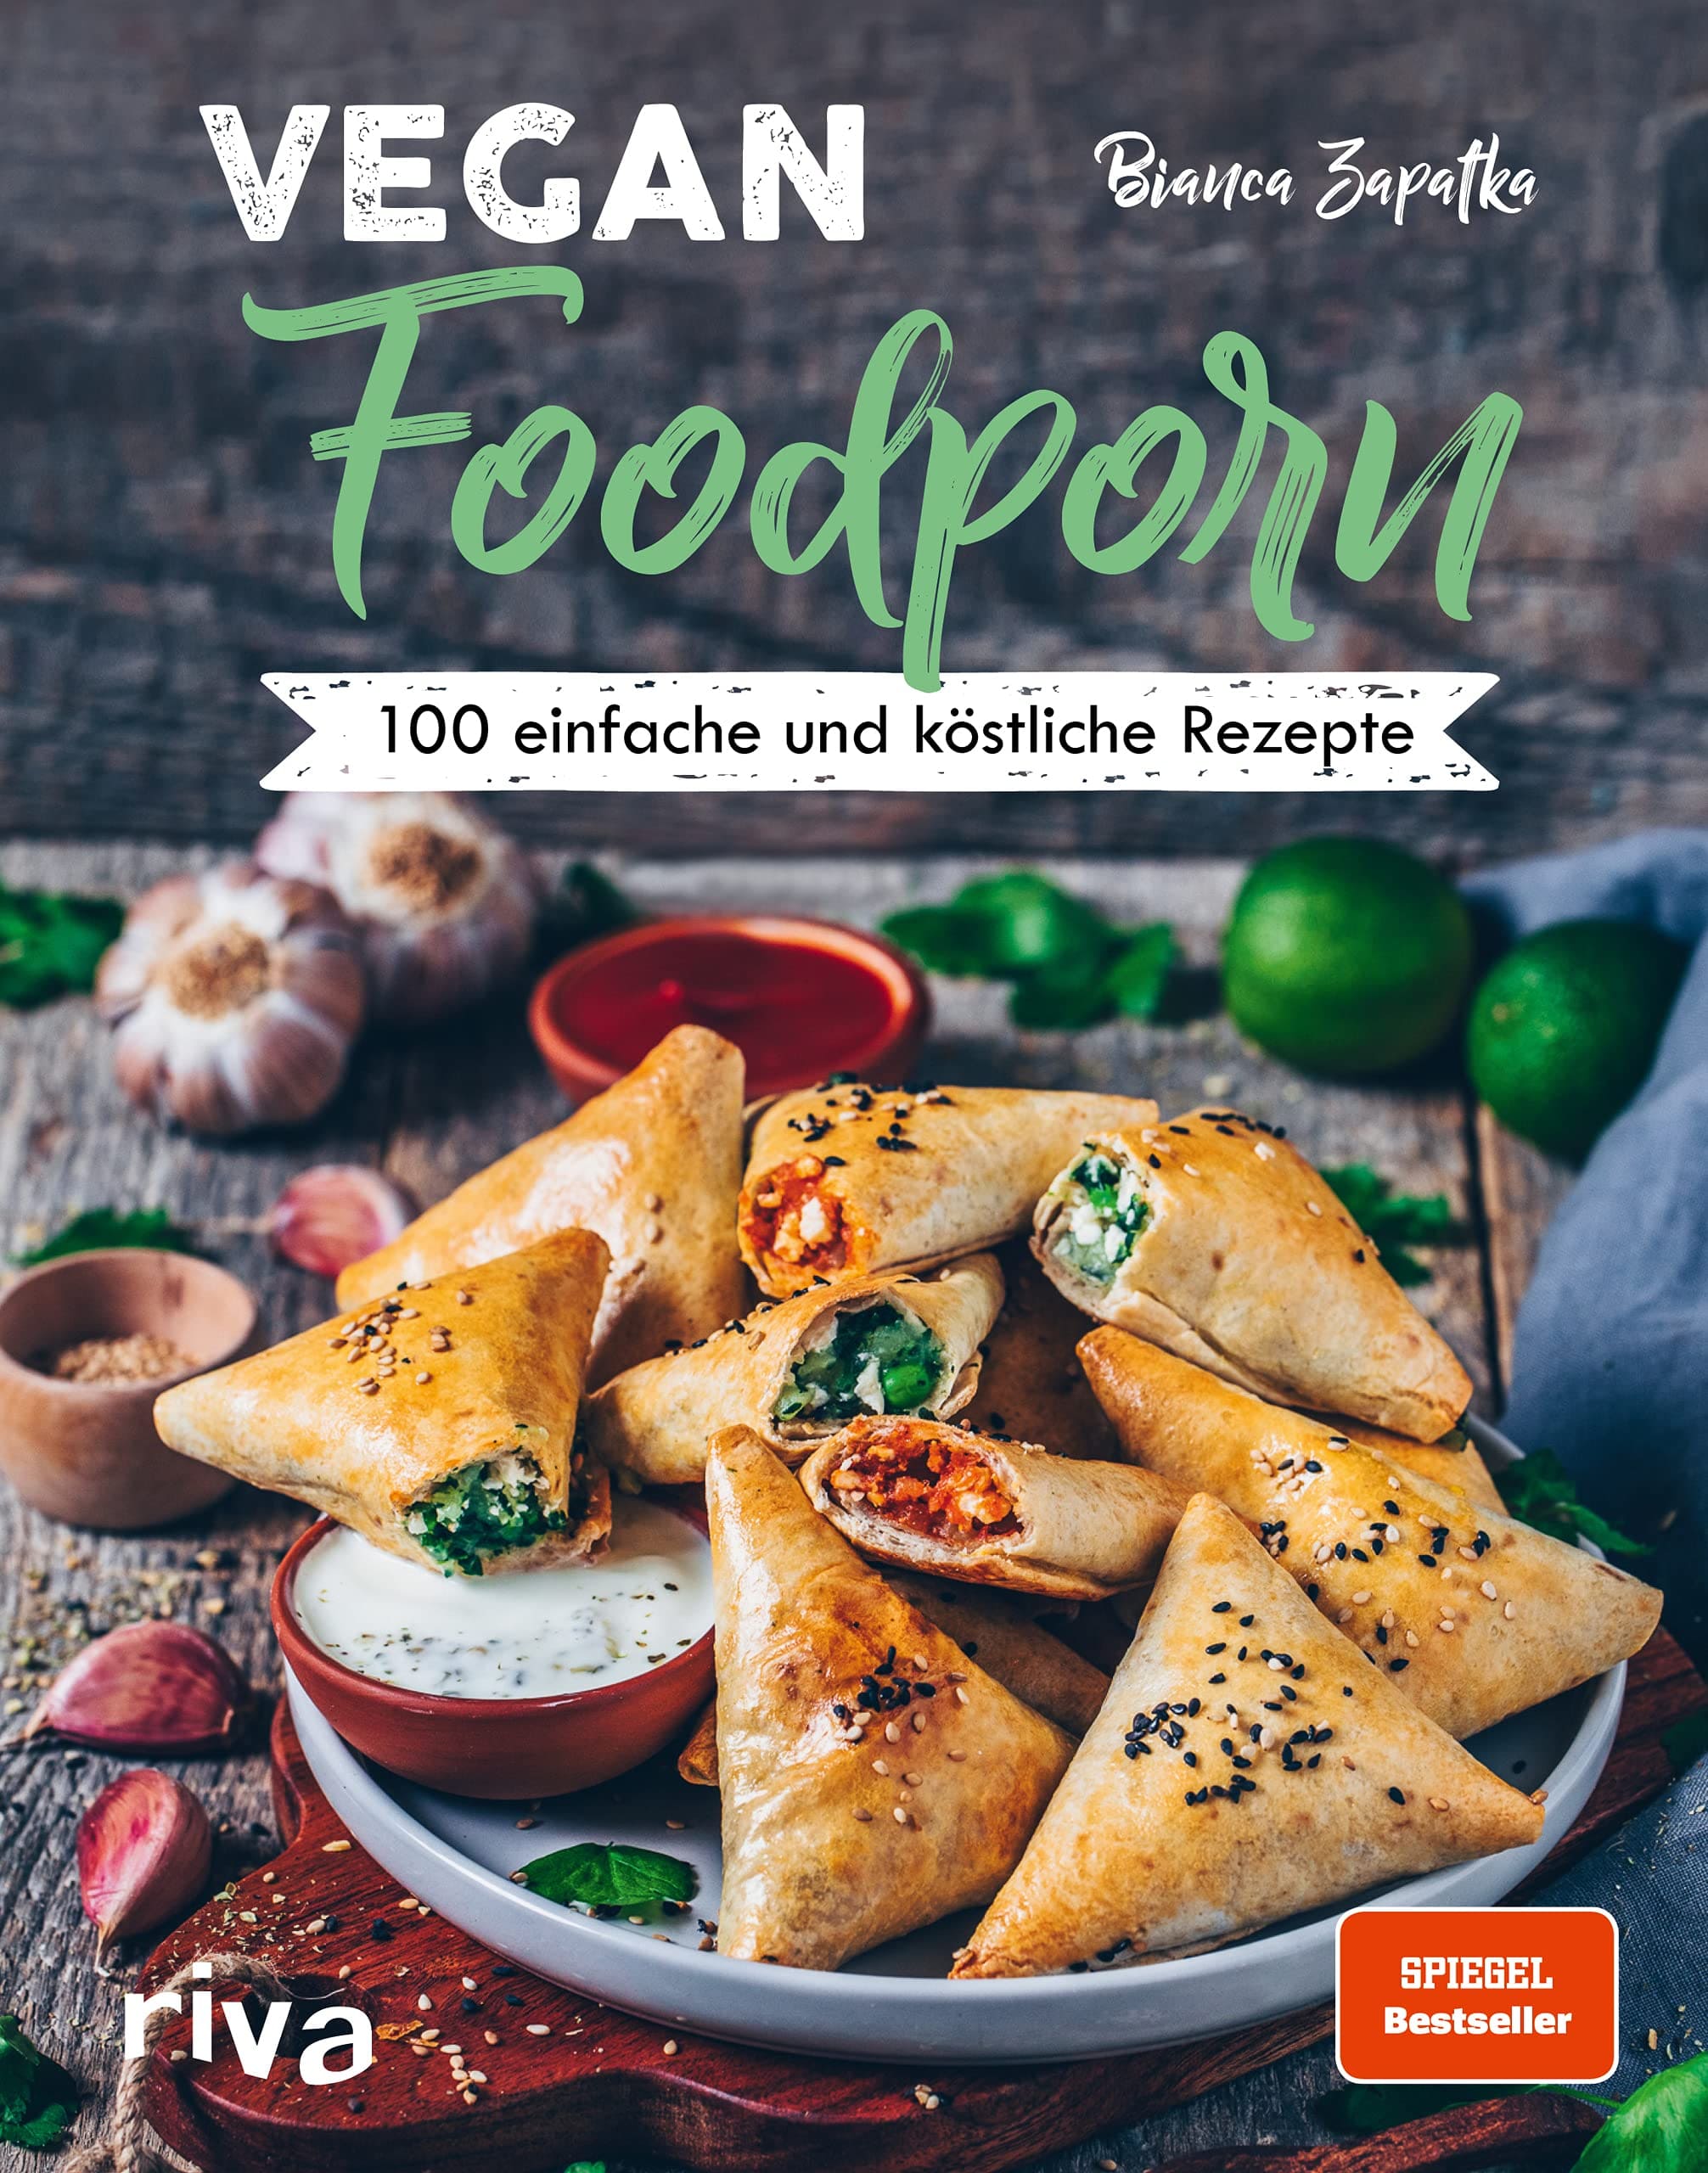 Vegan Foodportn - 100 einfache und köstliche Rezepte